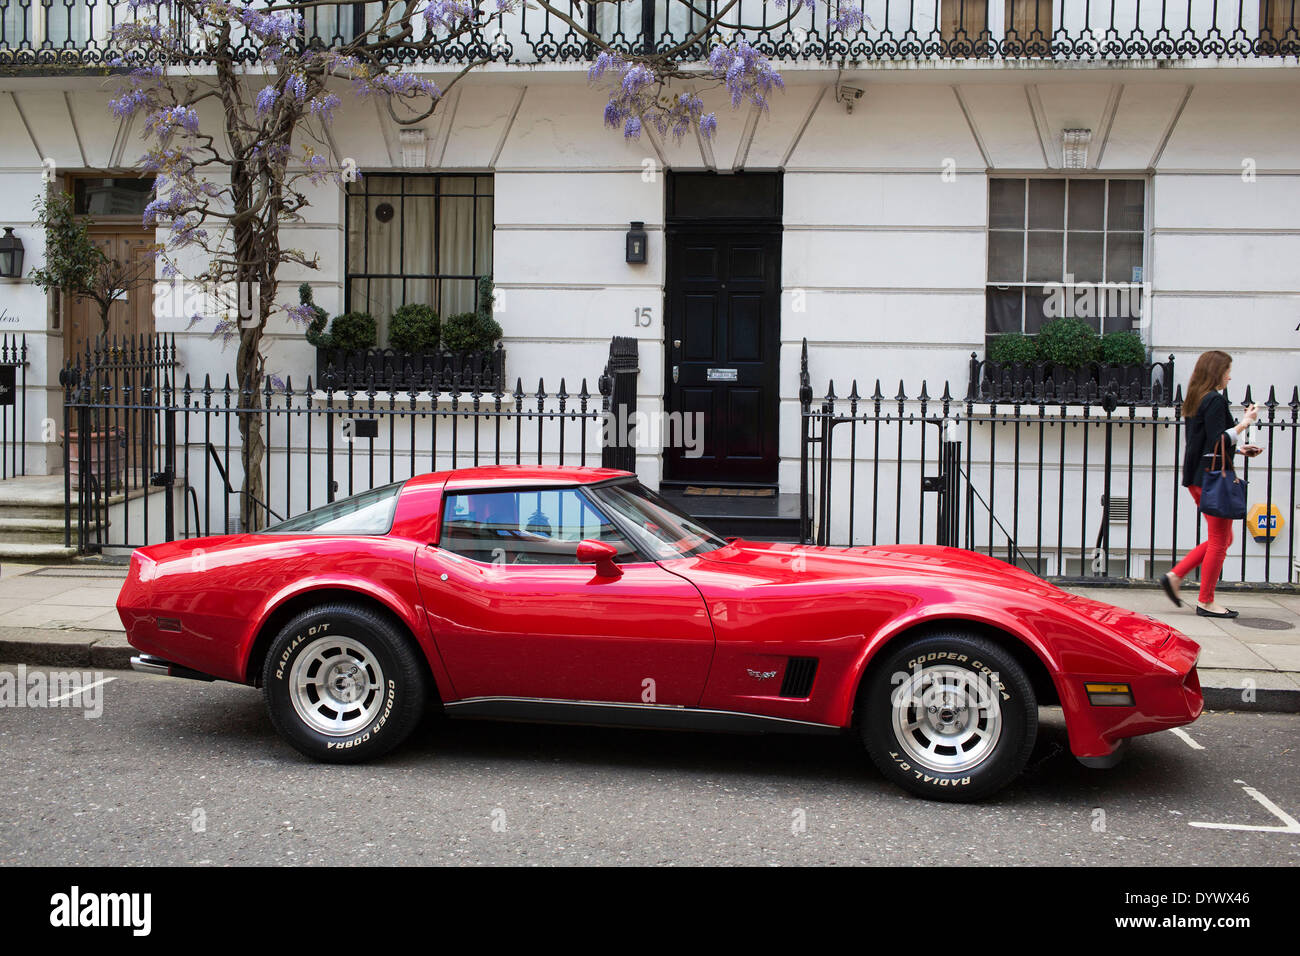 Oldtimer Sportwagen Red Corvette geparkt vor einem Haus in Knightbridg. Reichtum in West-London, UK. Stockfoto